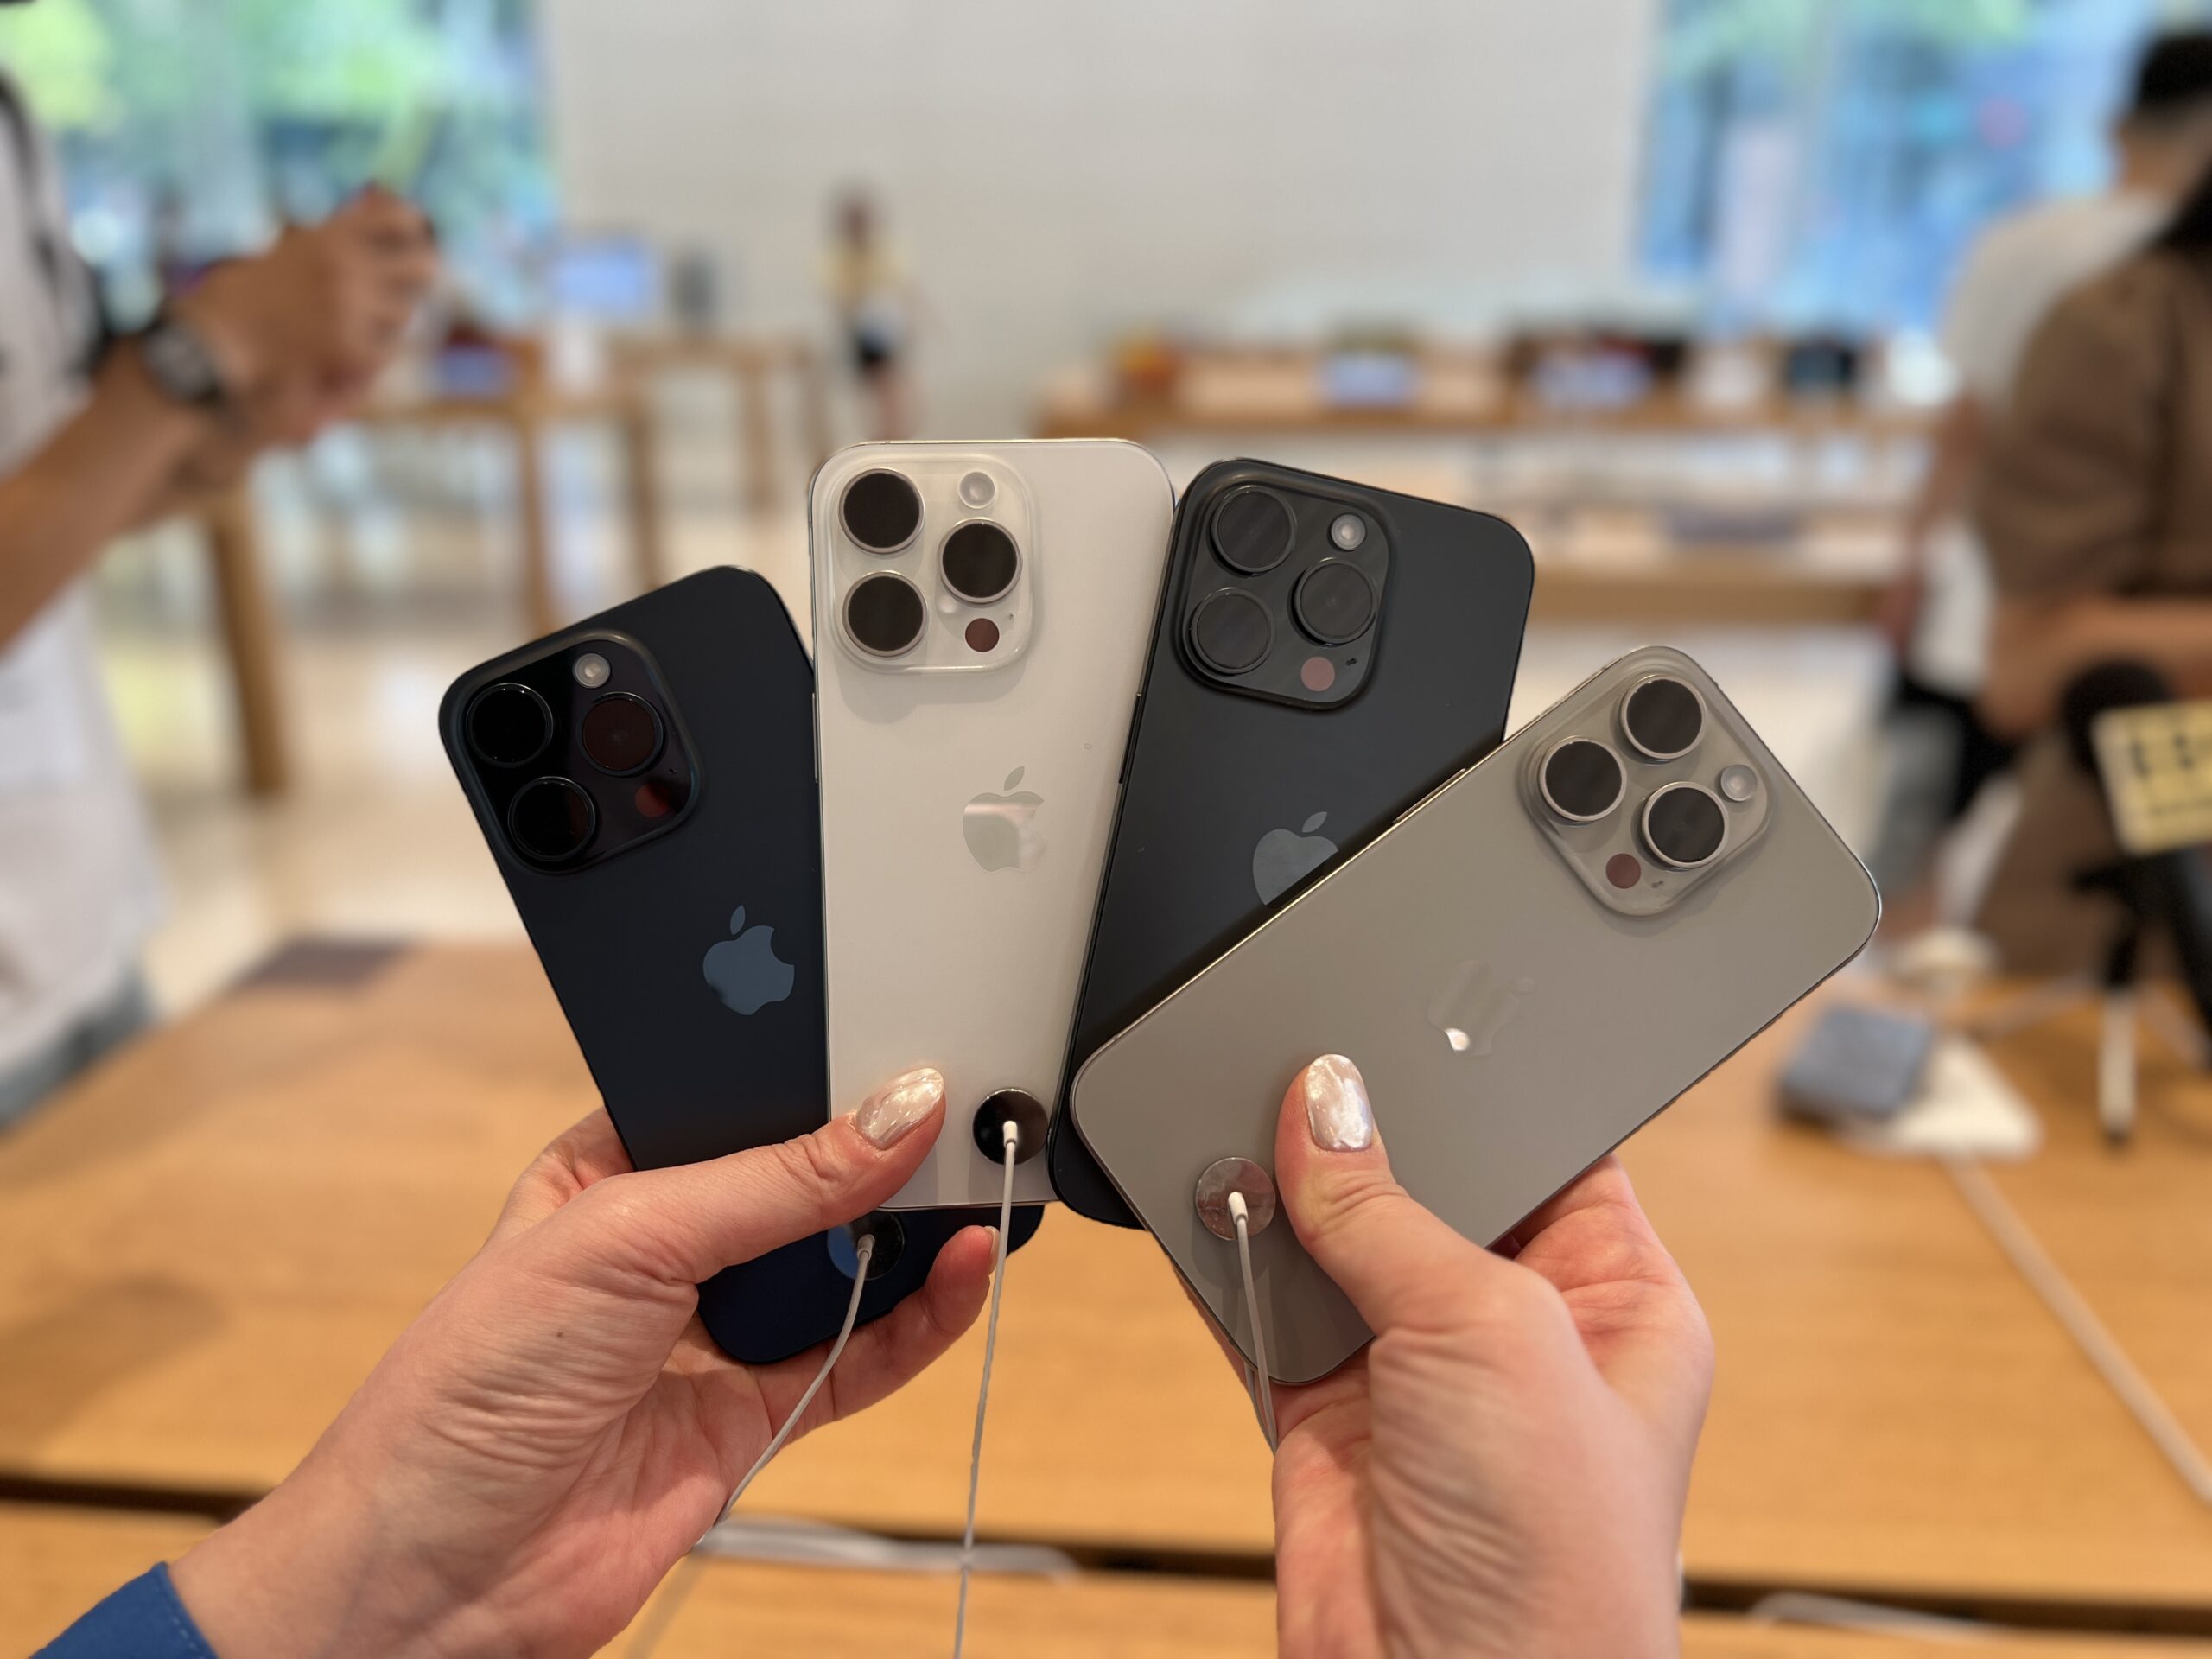 iPhone Pro 所有顏色的實機照(由左至右: 藍 白 黑 原色灰)